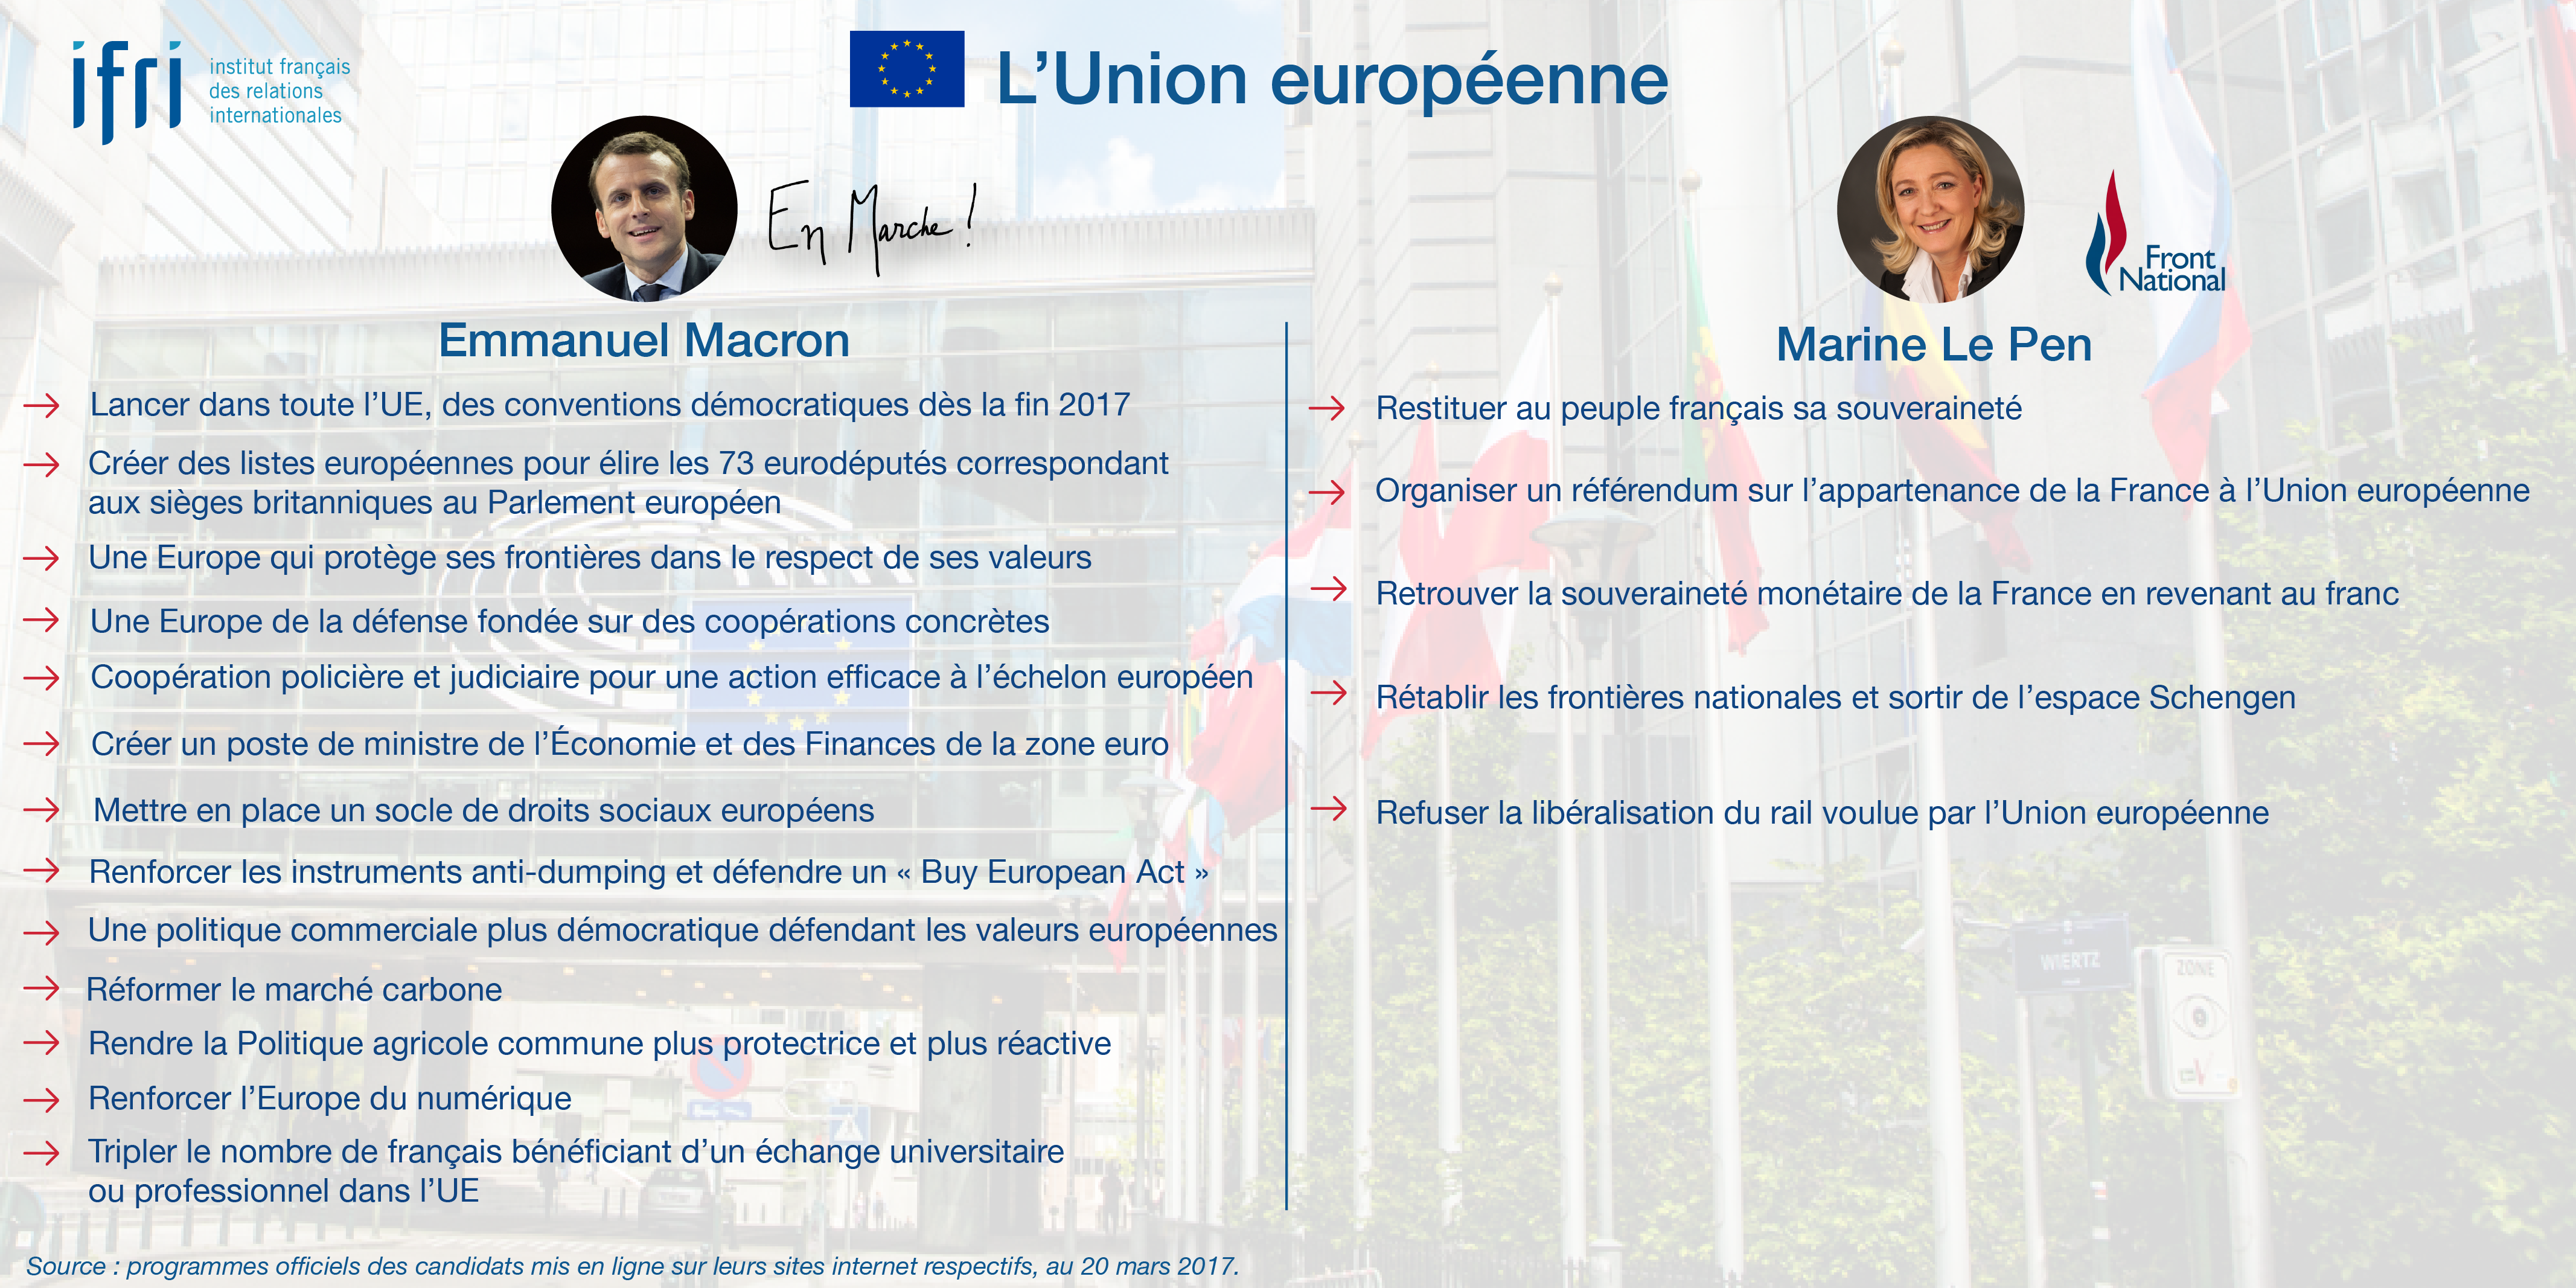 L'Union européenne - Macron - Le Pen - Présidentielle 2017